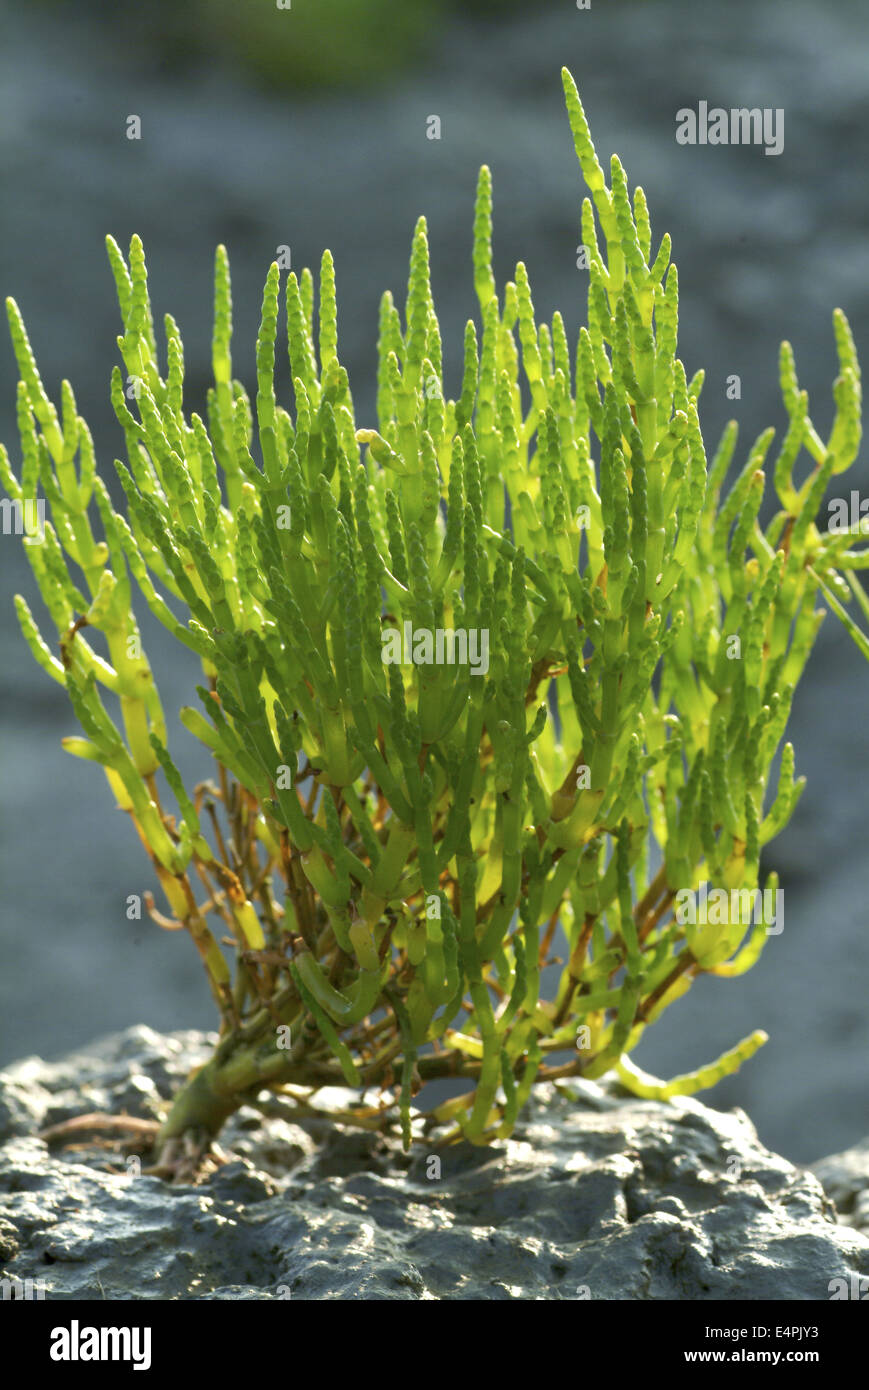 glasswort, salicornia europaea Stock Photo